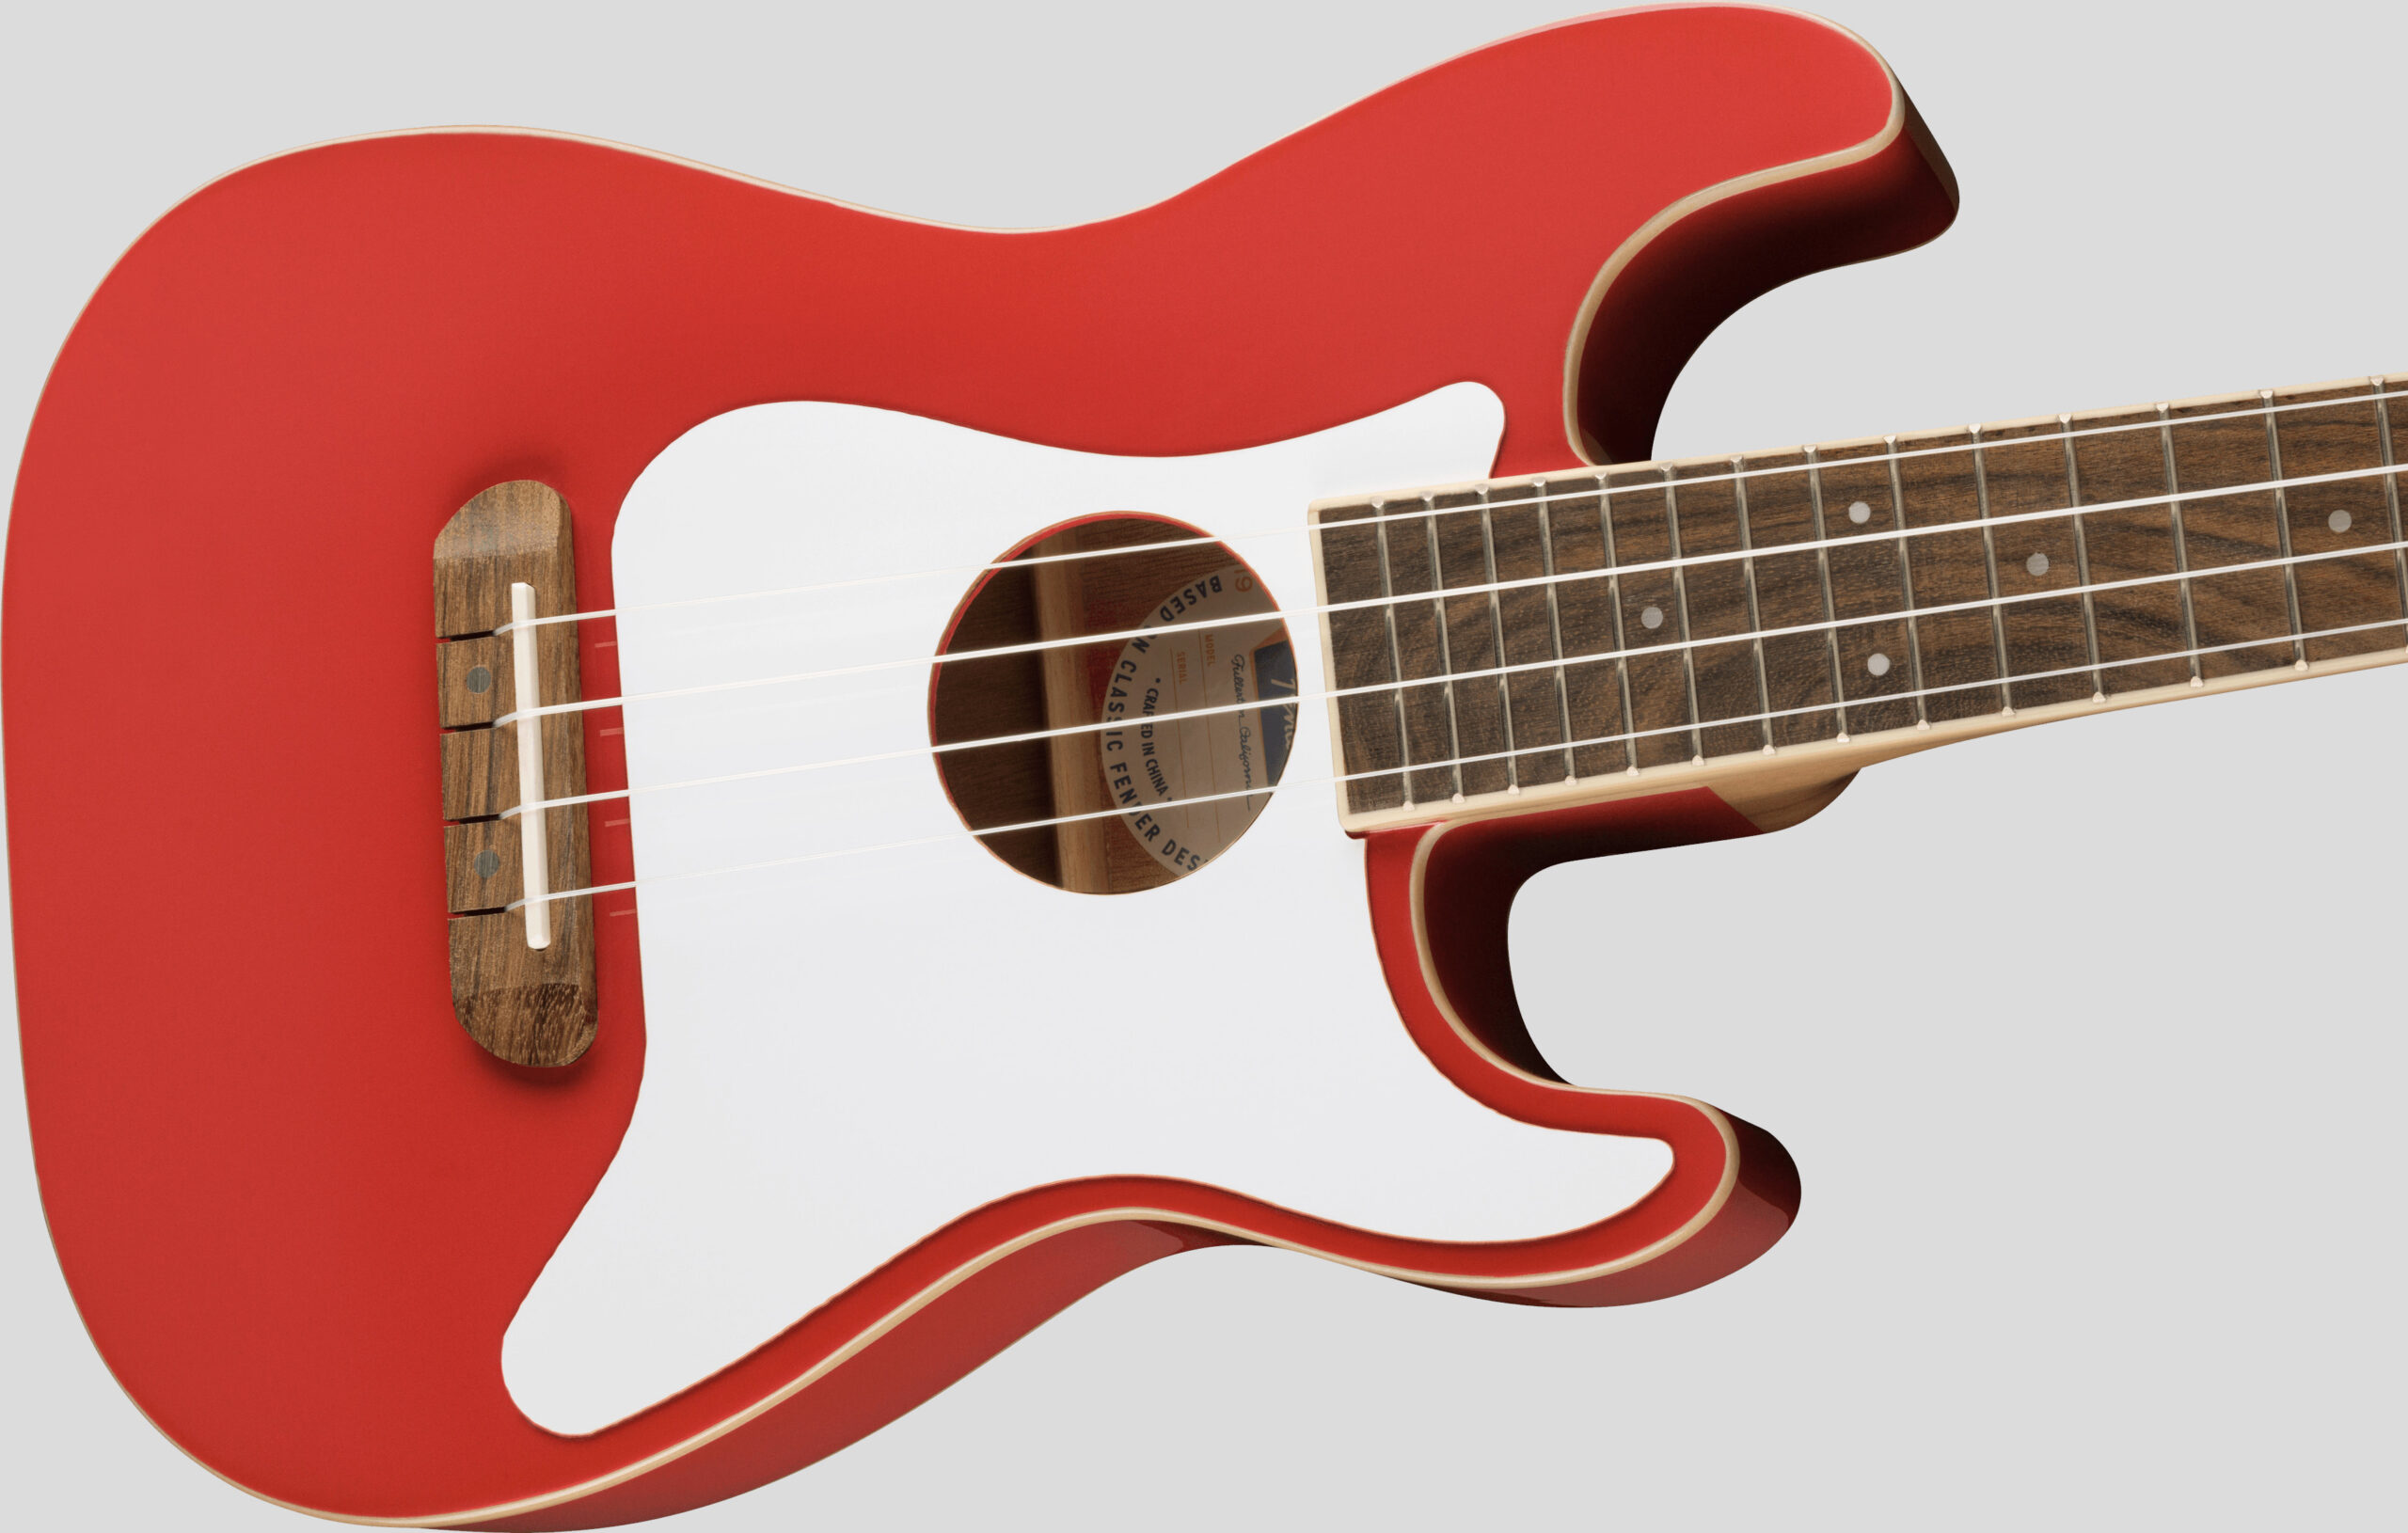 Fender Limited Edition Fullerton Stratocaster Concert Ukulele Fiesta Red 3